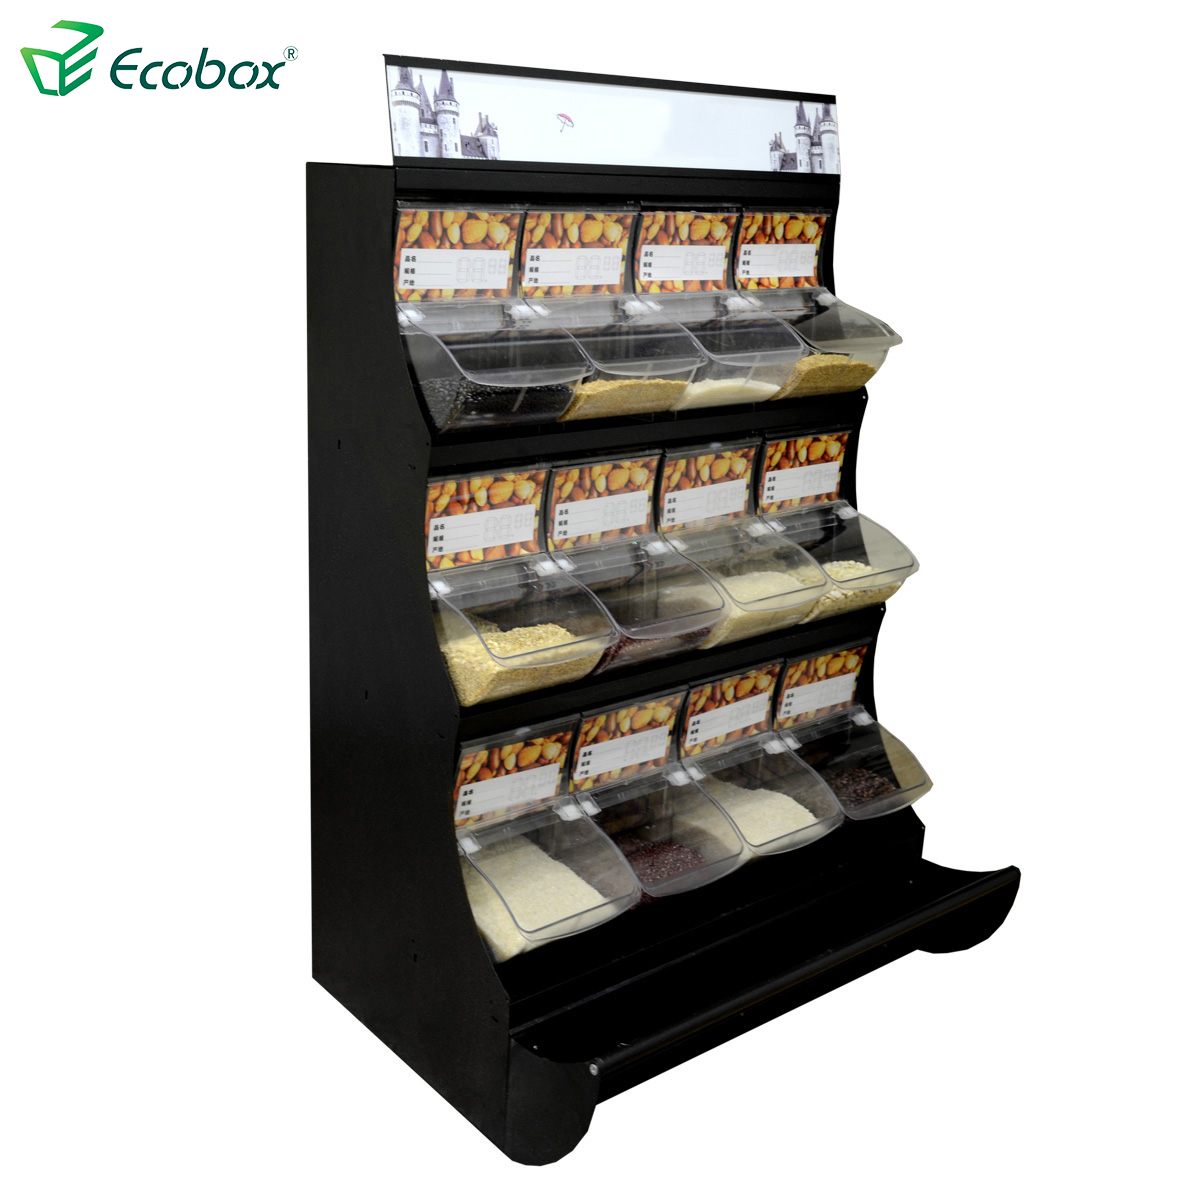 Ecobox TG-02101C糖果陈列架1.5M高度